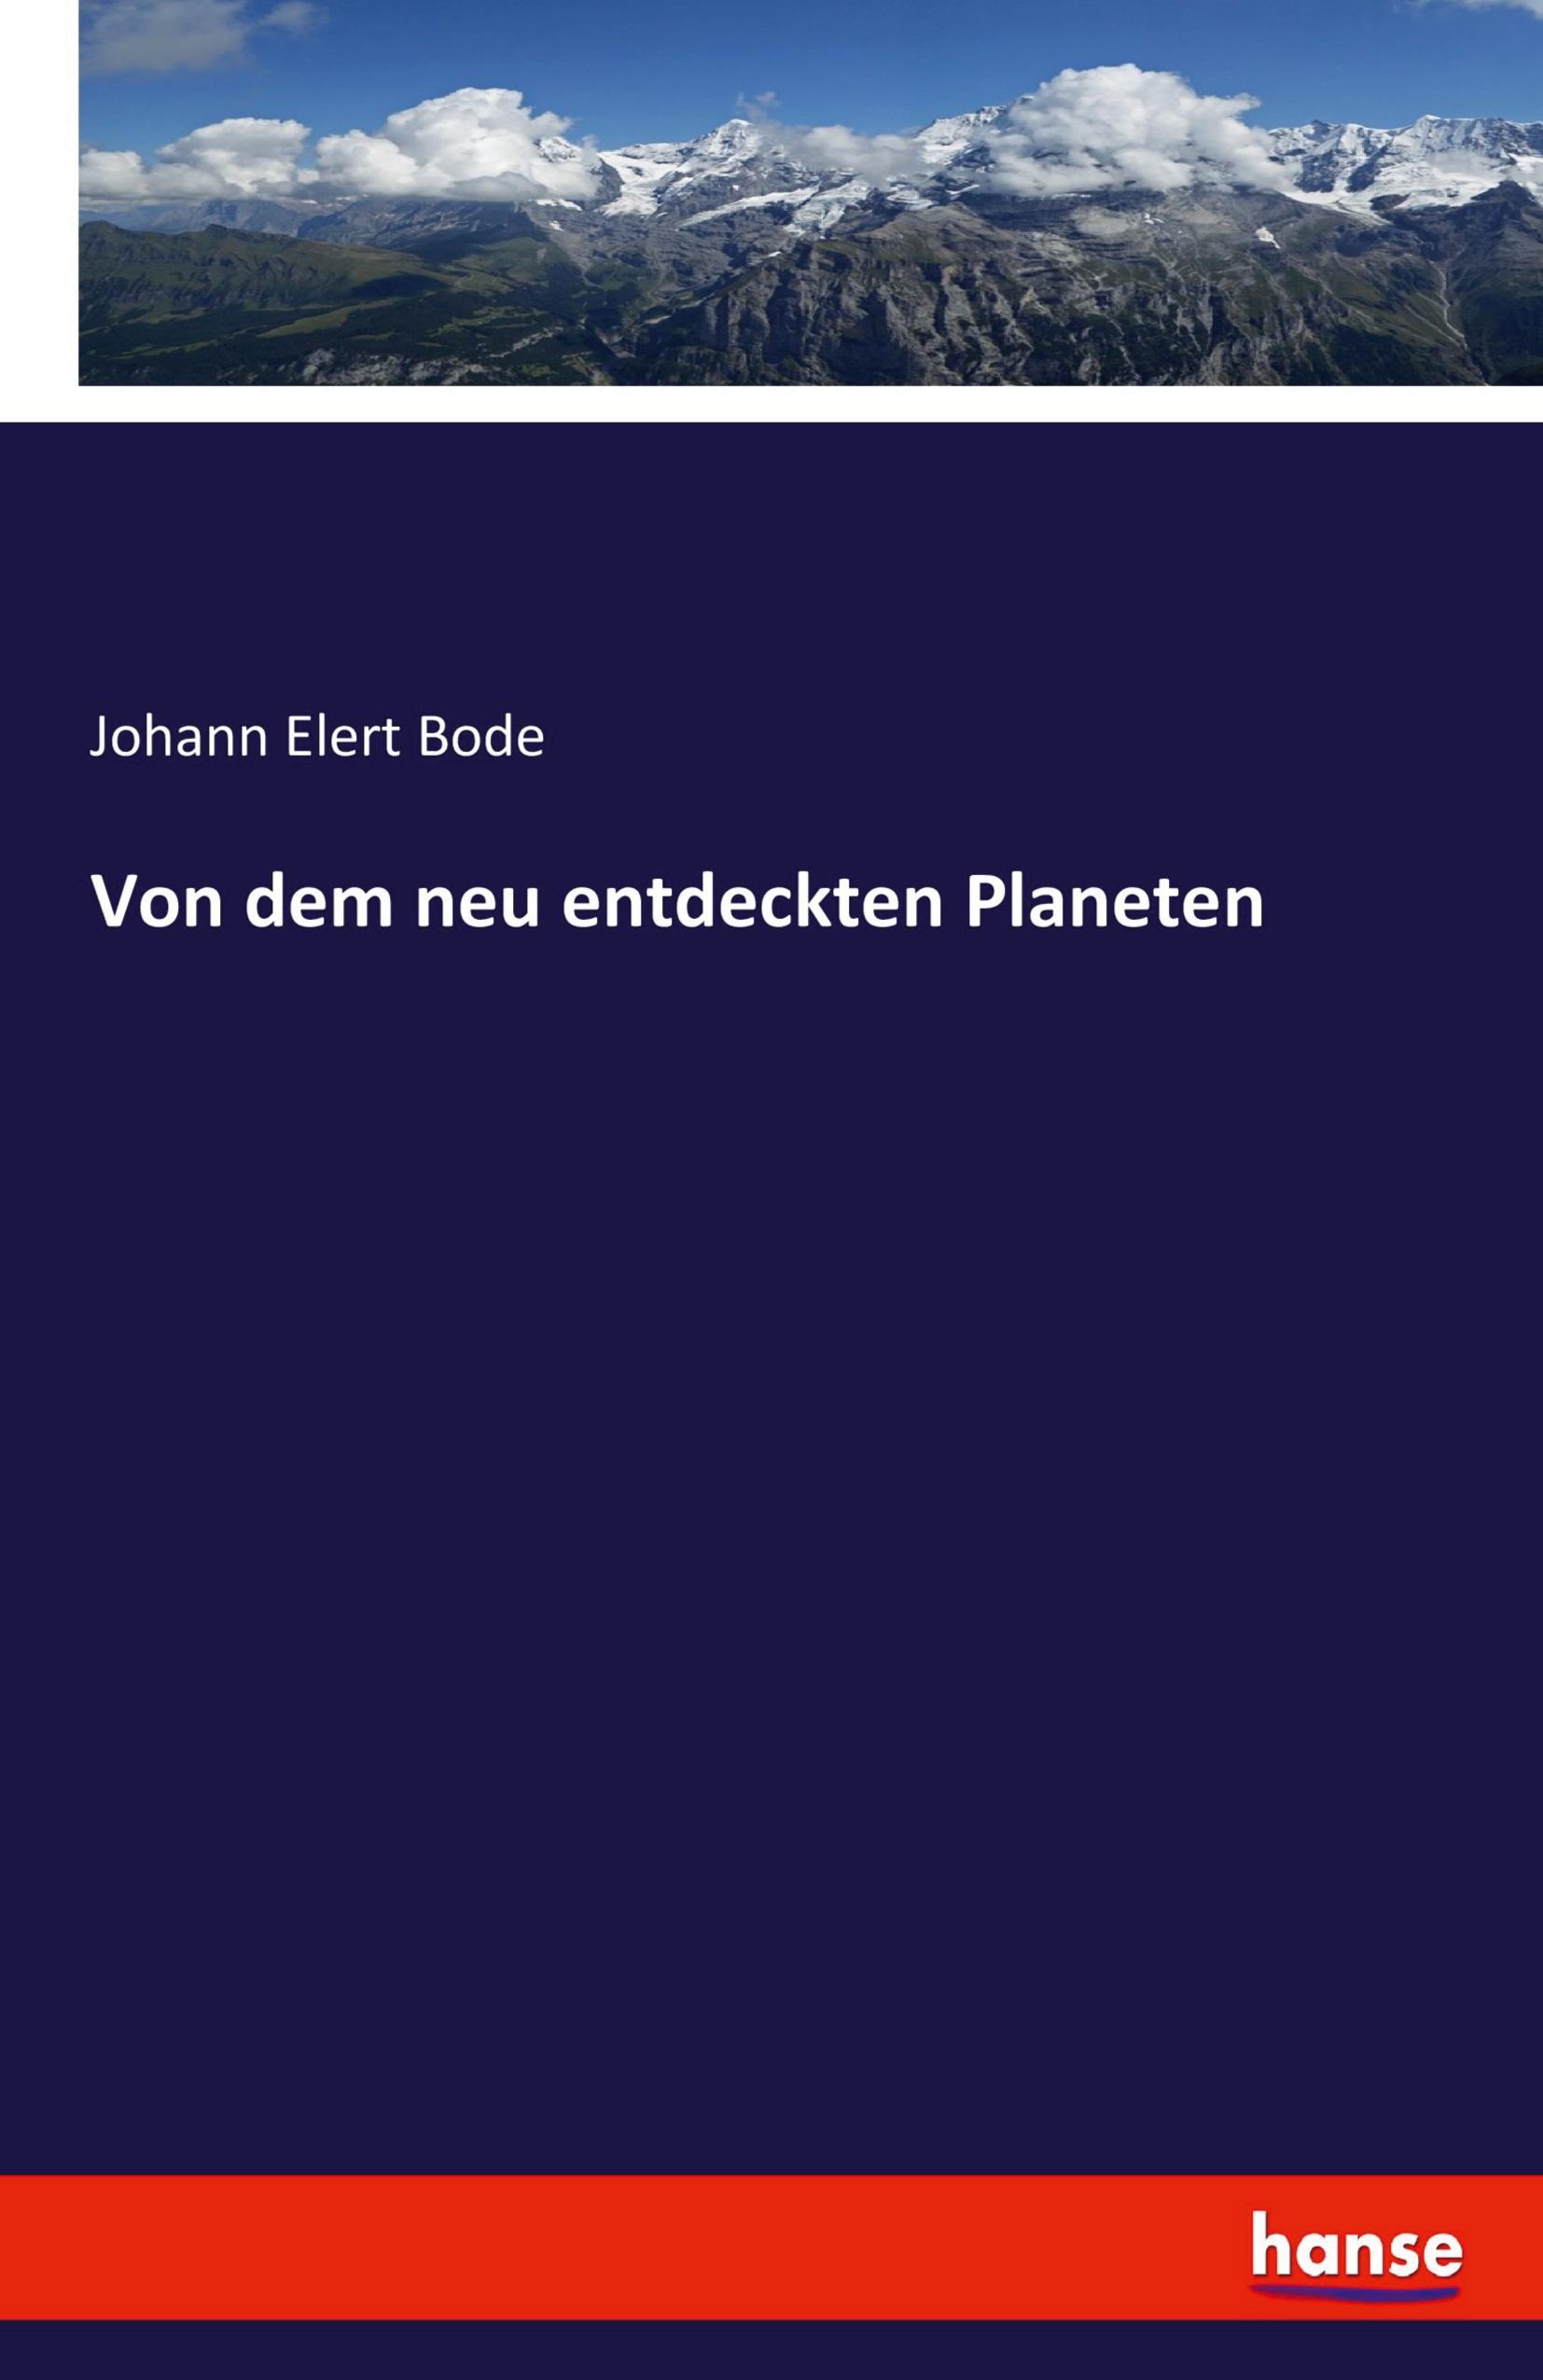 Von den neu entdeckten Planeten - Bode, Johann Elert